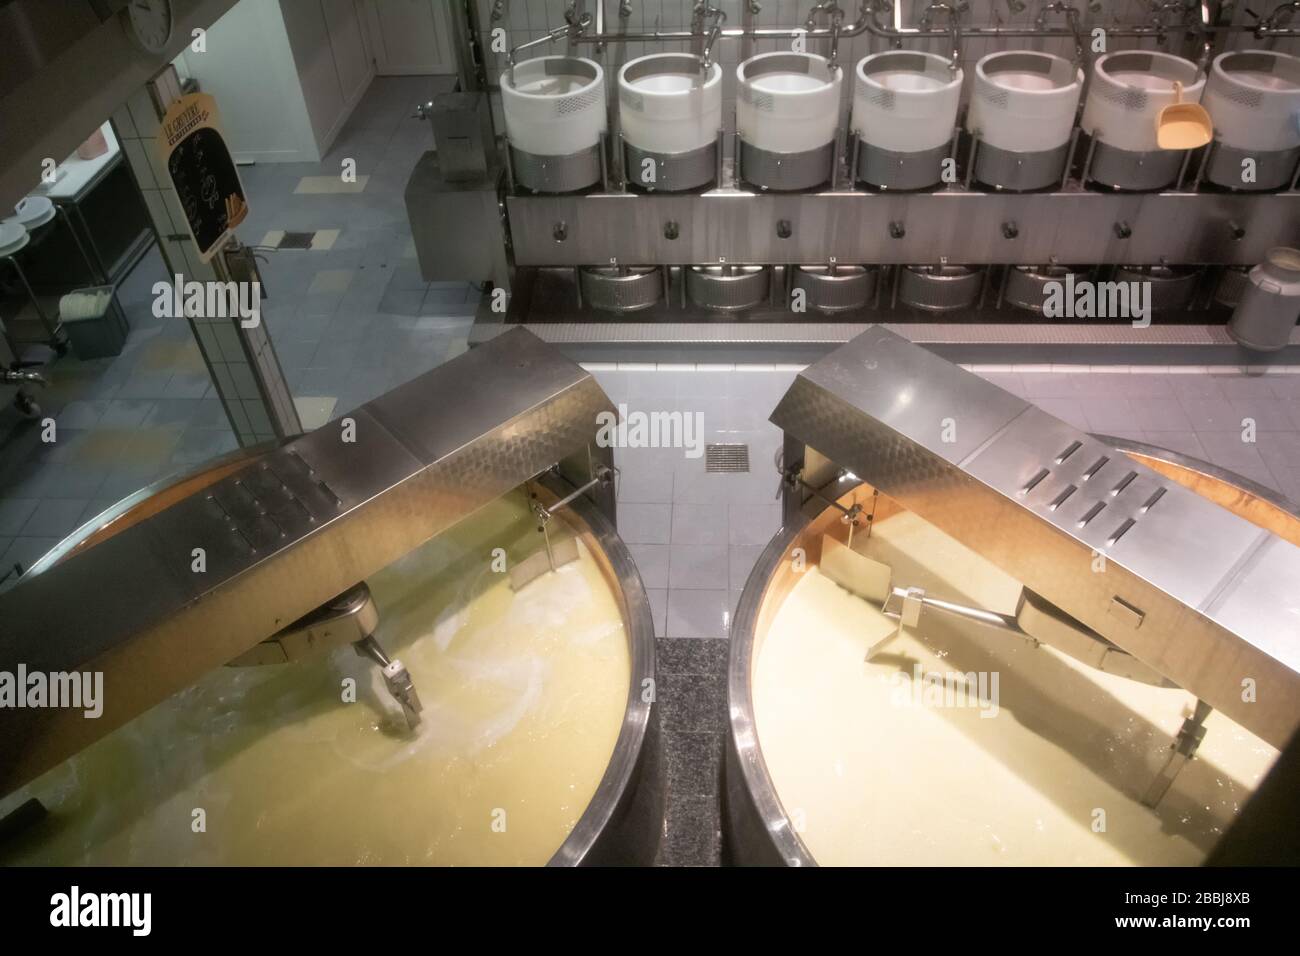 Le Gruyere production de fromage Suisse, 03/09/2019, la belle ville des alpes. La production du fromage de renommée mondiale. Stockage dans les grottes et Banque D'Images